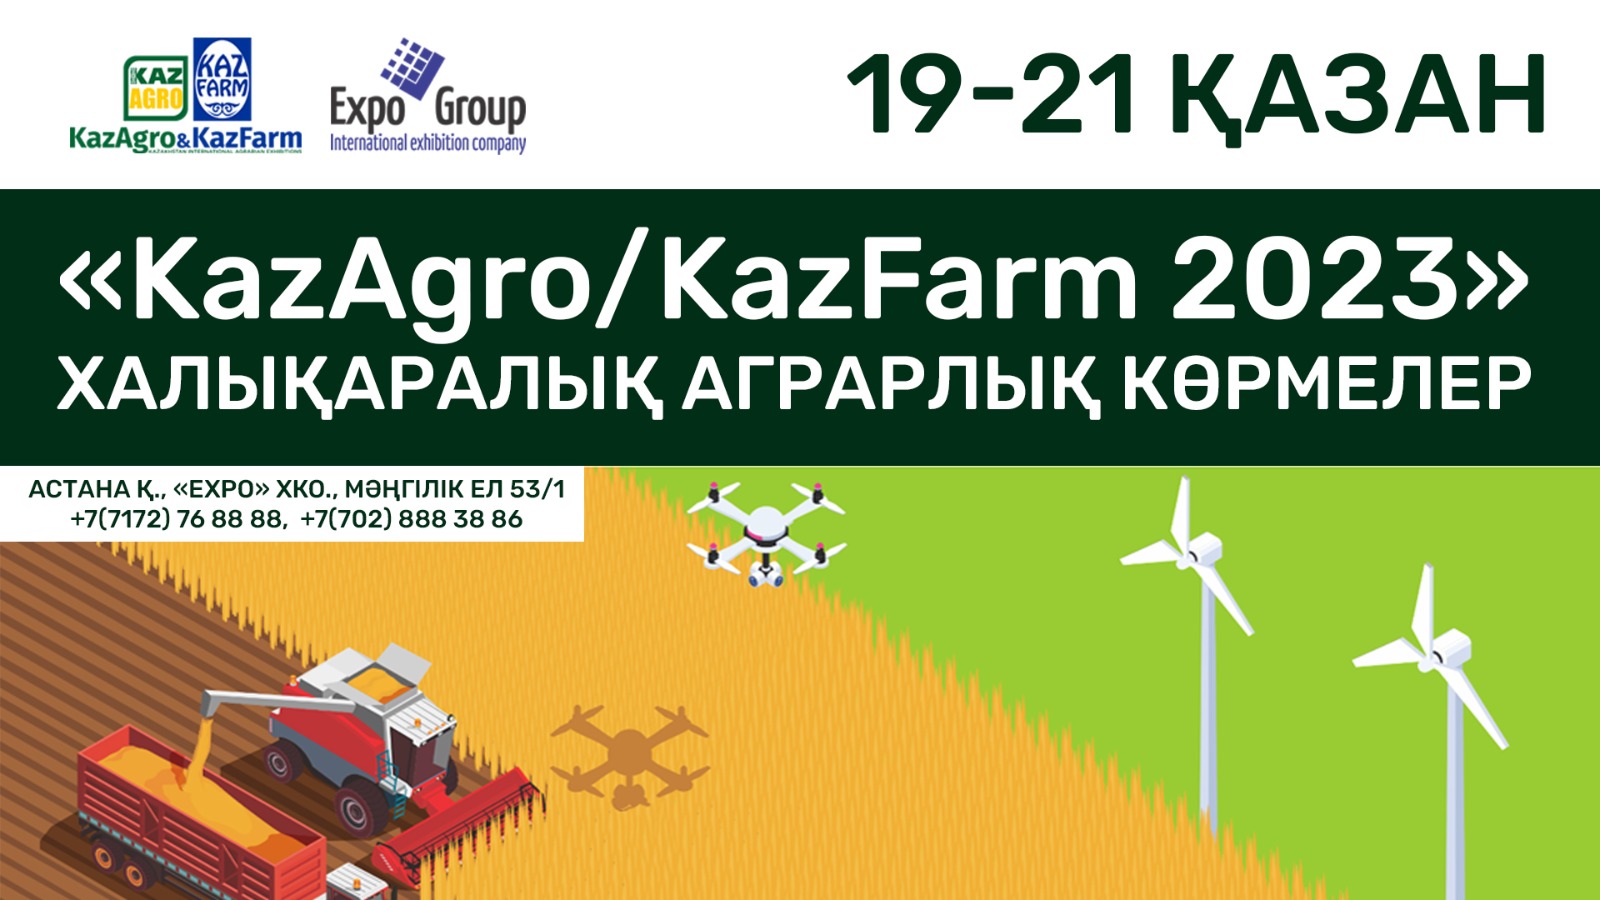 В МВЦ EXPO пройдут международные аграрные выставки KazAgro/KazFarm 2023